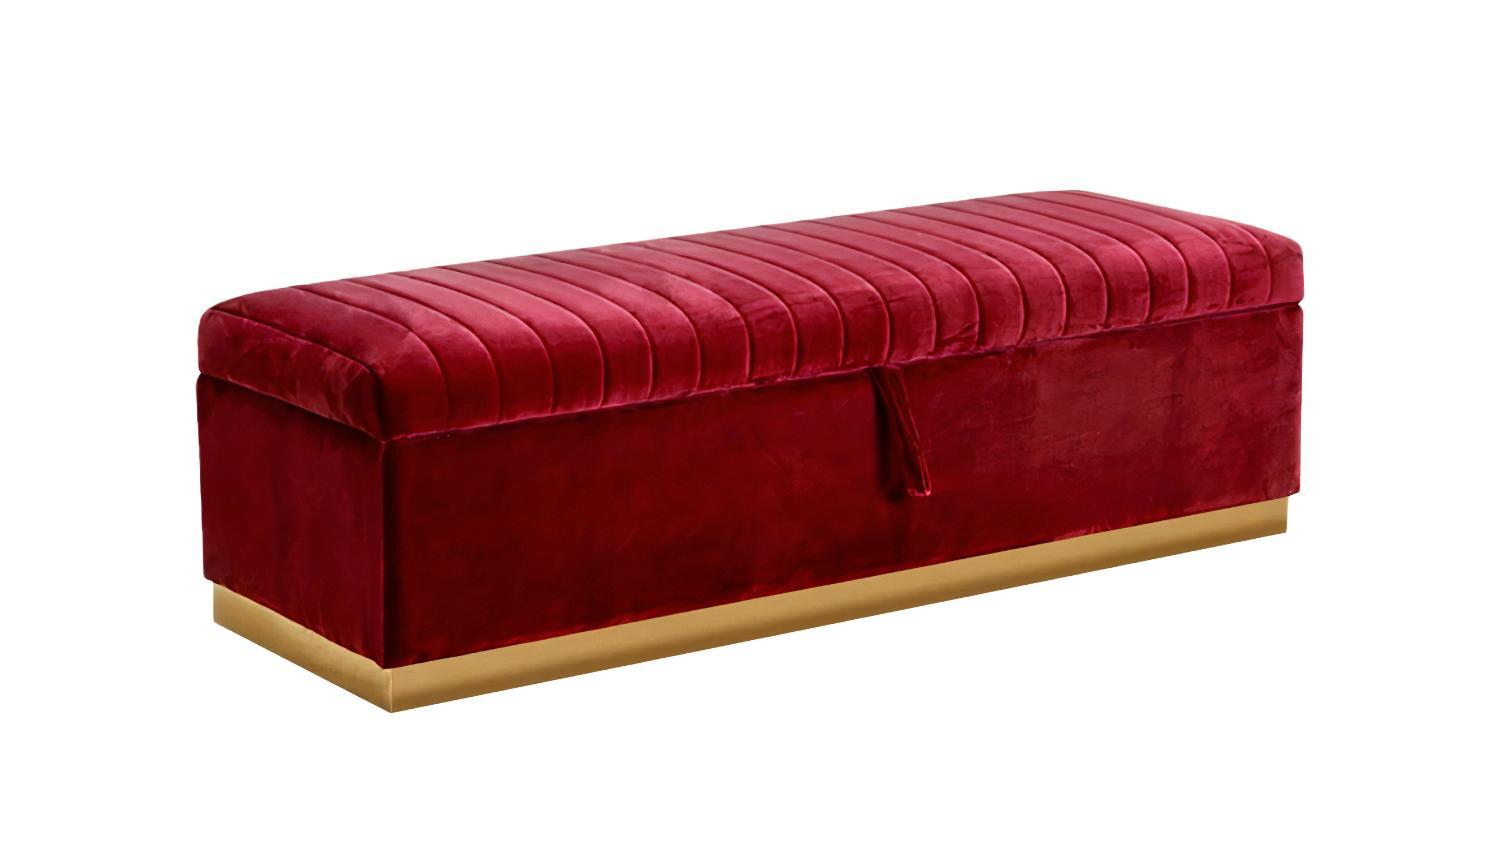 VIG Furniture Reyes Bench